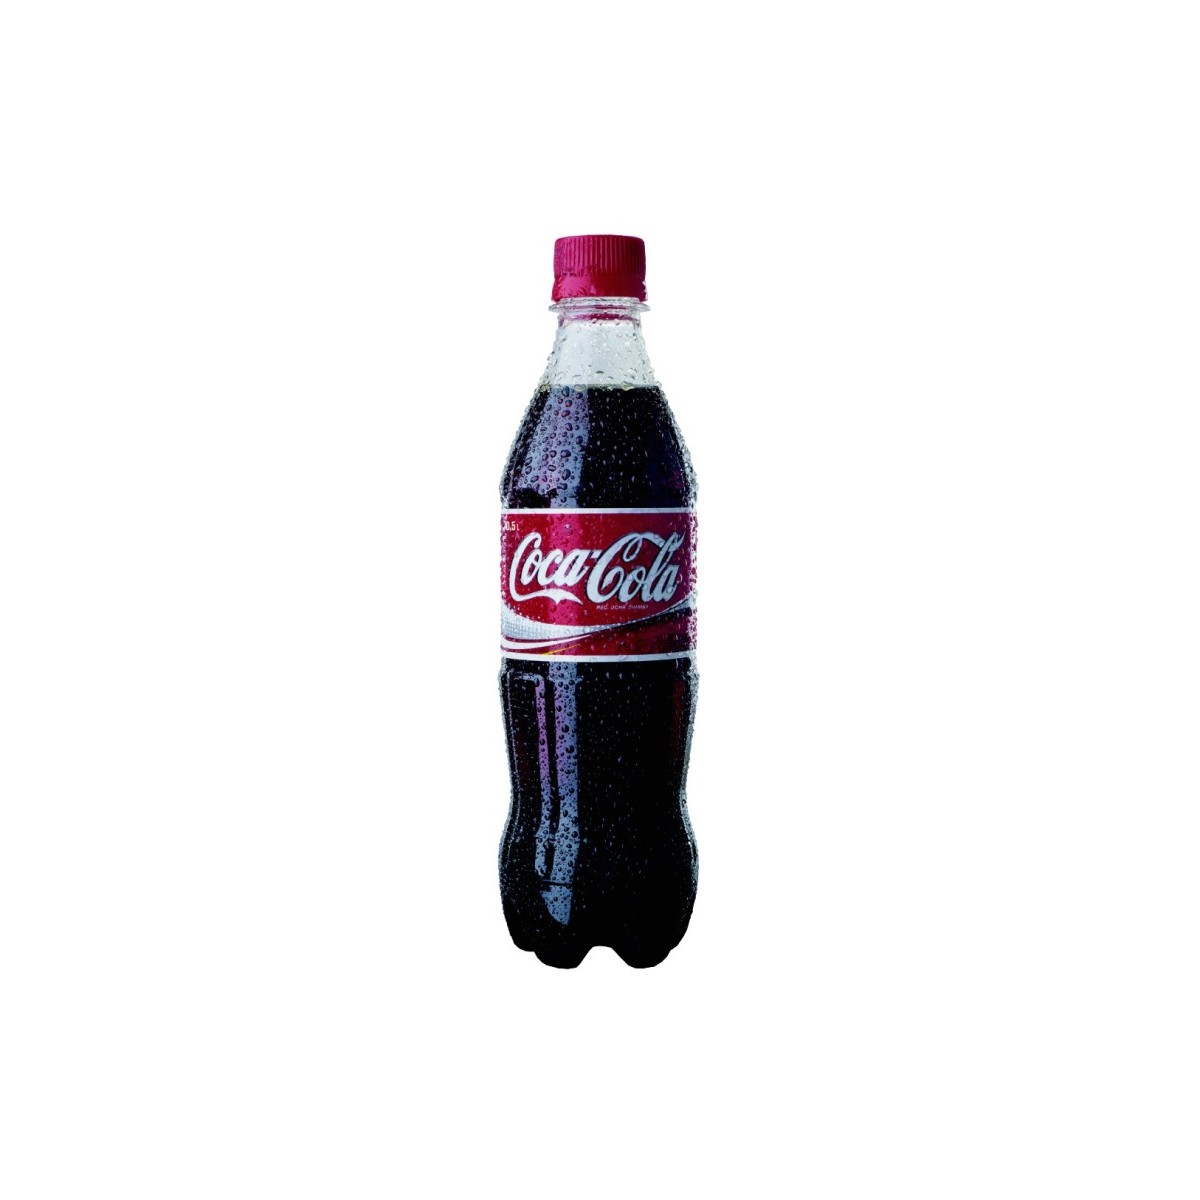 Coca cola 0,5l - PET